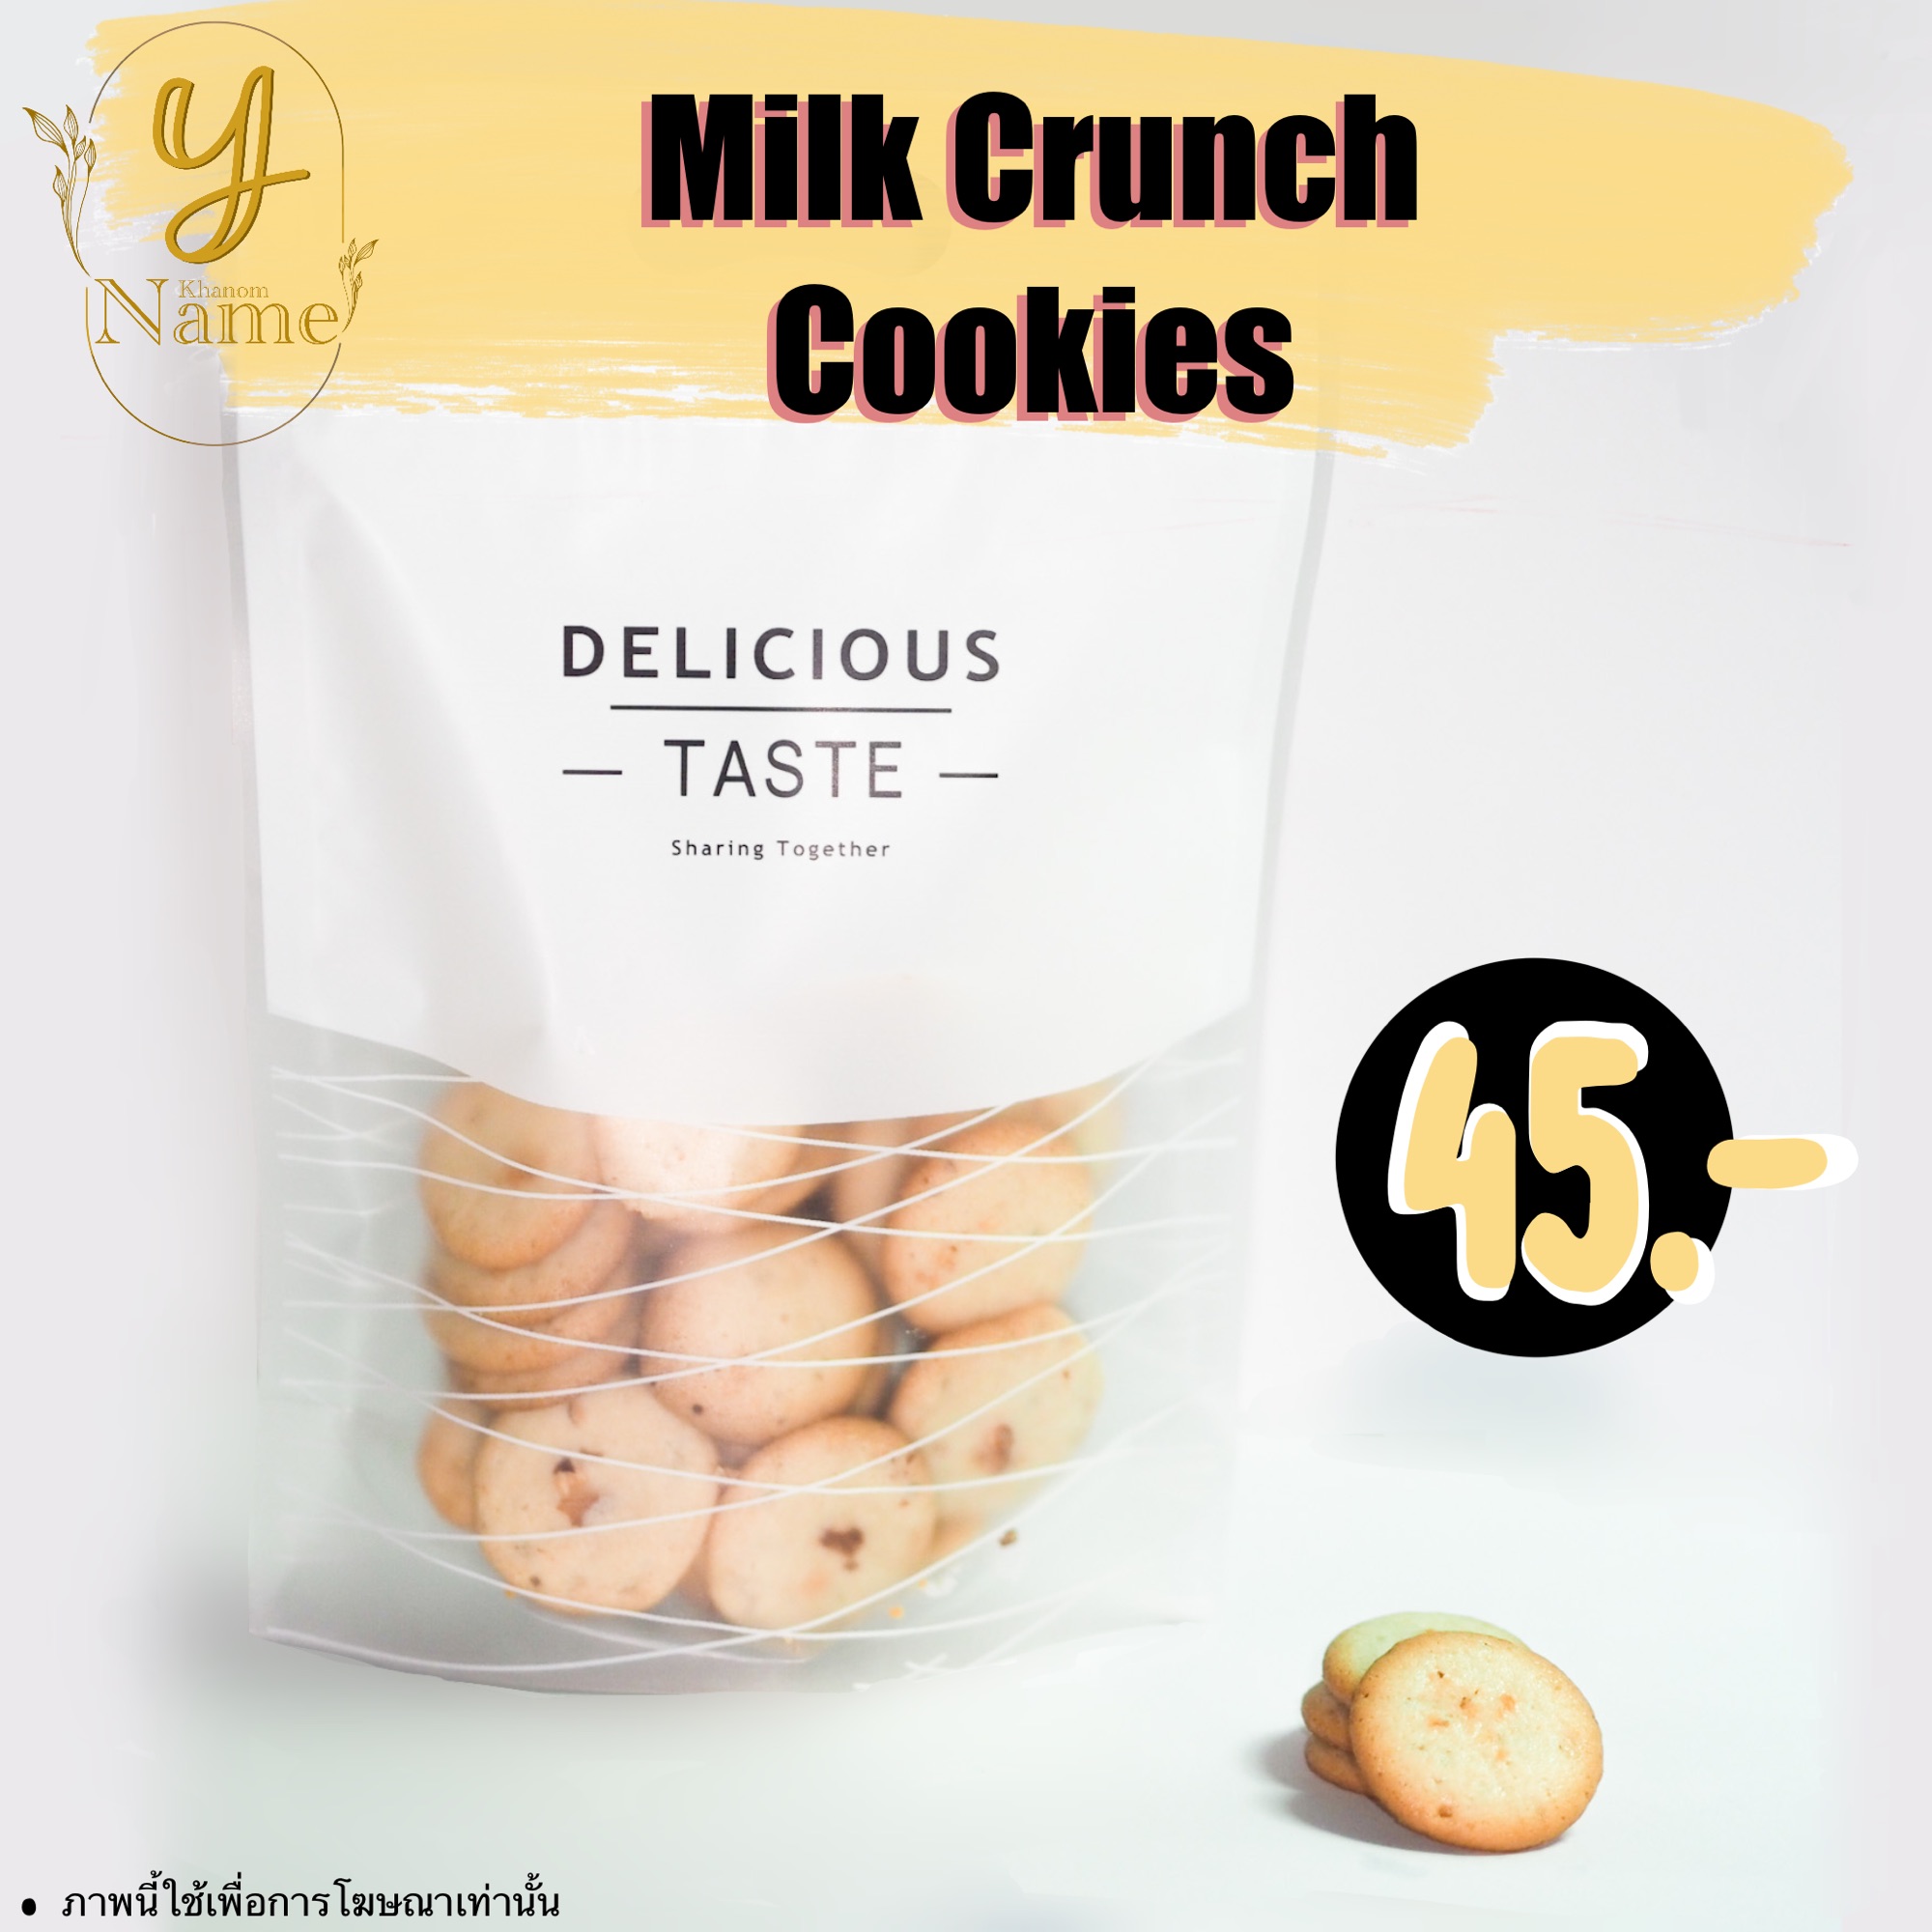 Crunch Cookie คุกกี้ครั้นซ์ มี 3 รส นมอัลมอนด์ มัทฉะอัลมอนด์ ช็อคโกแลตอัลมอนด์